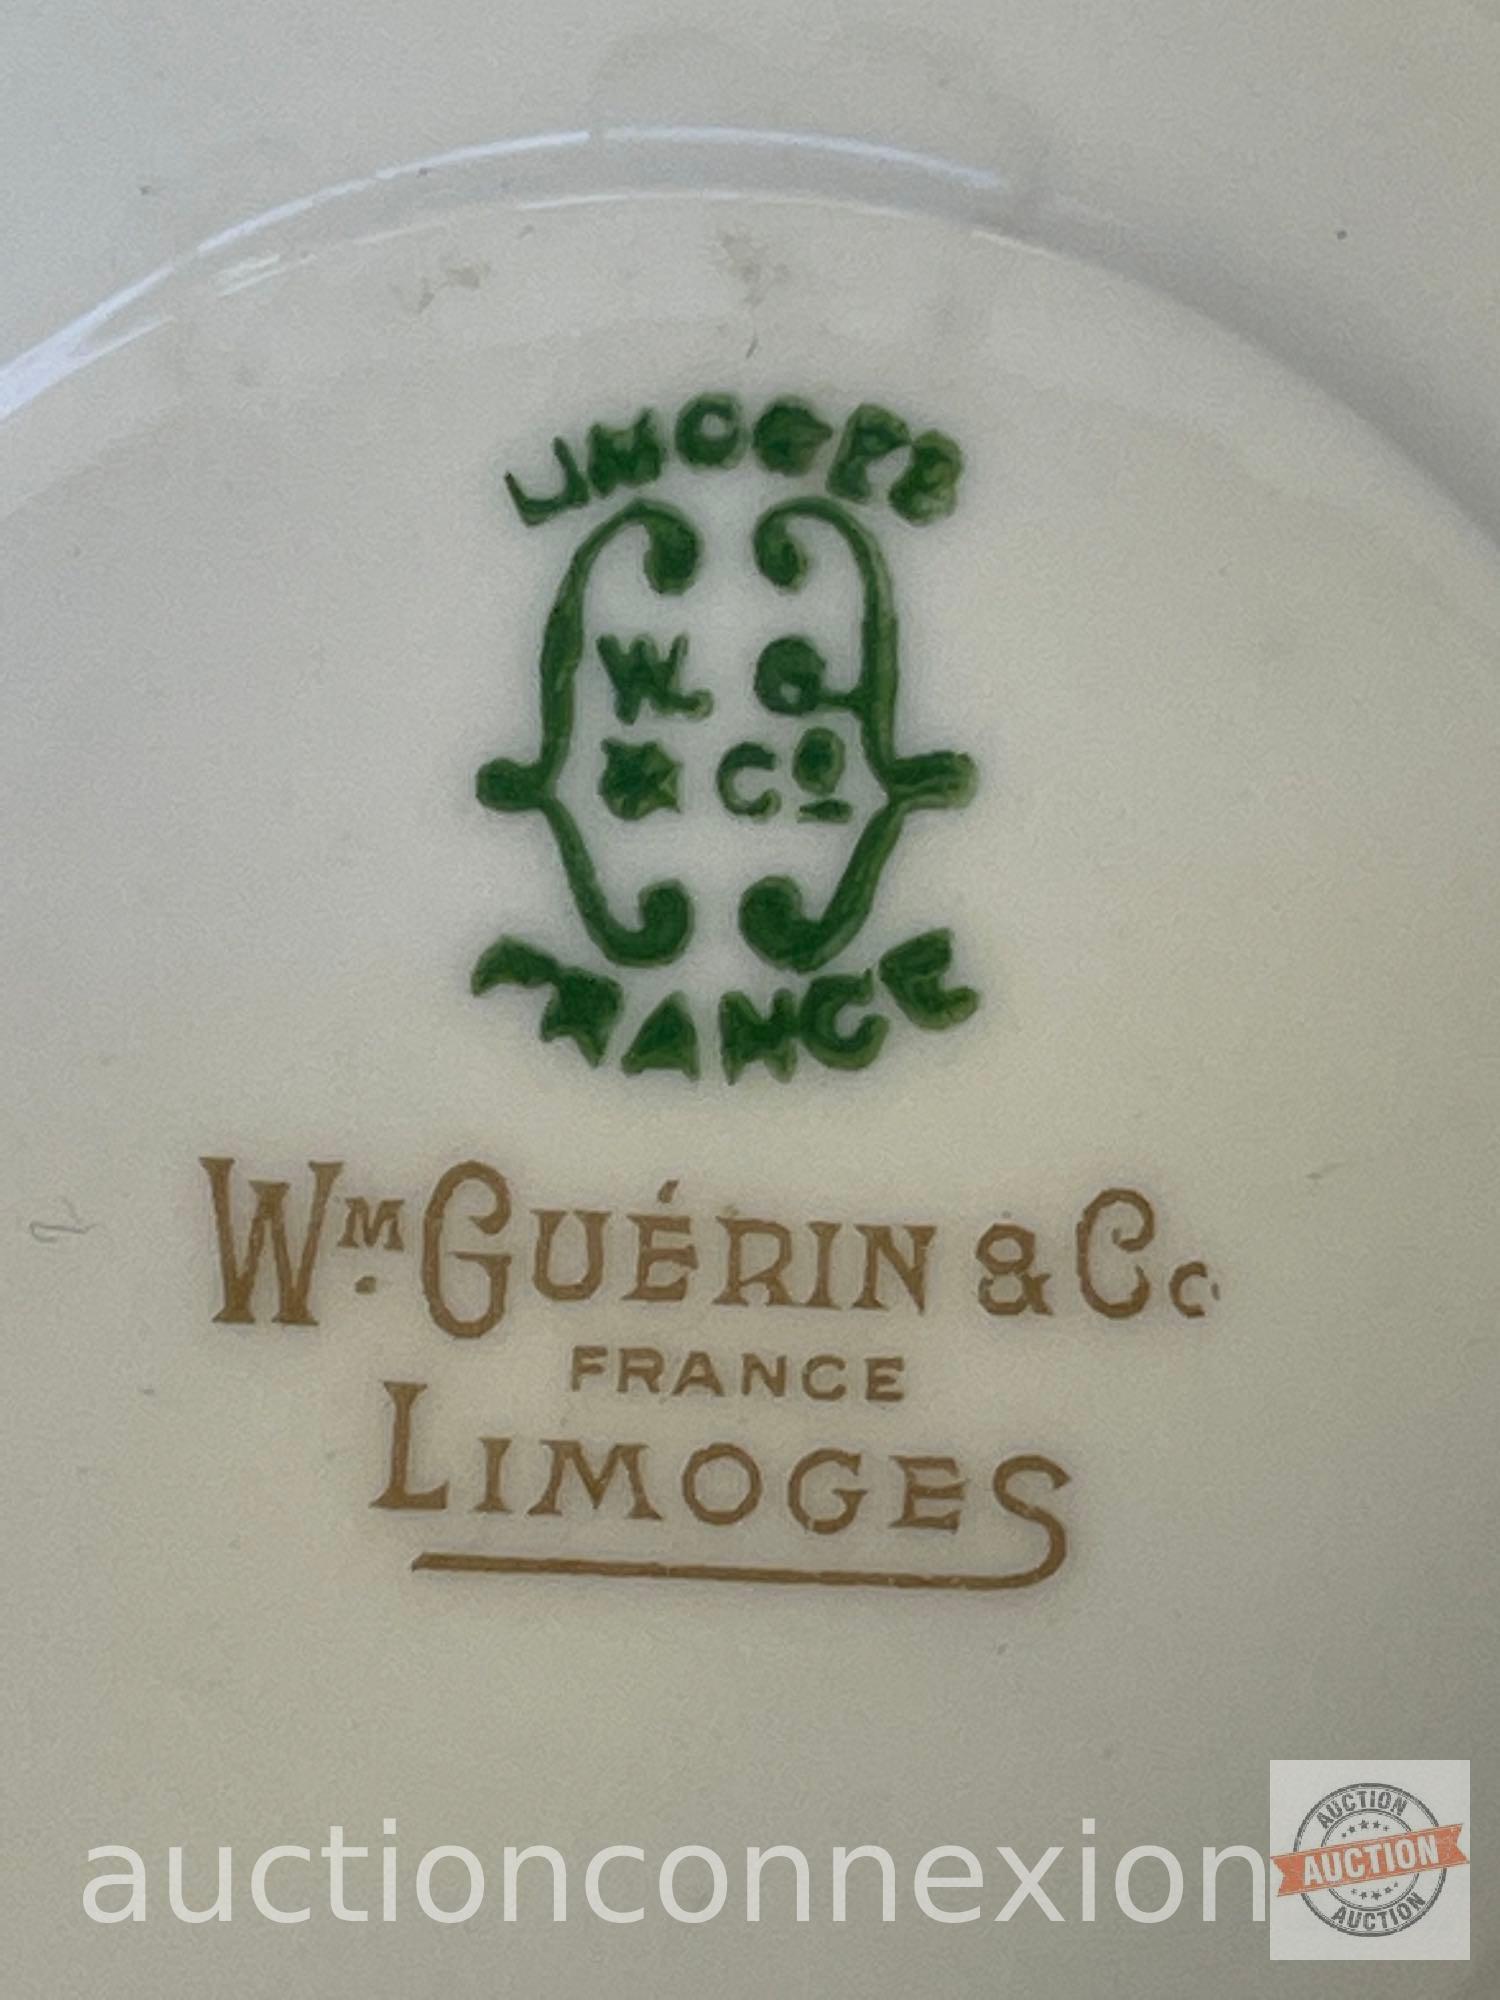 Vintage dish ware